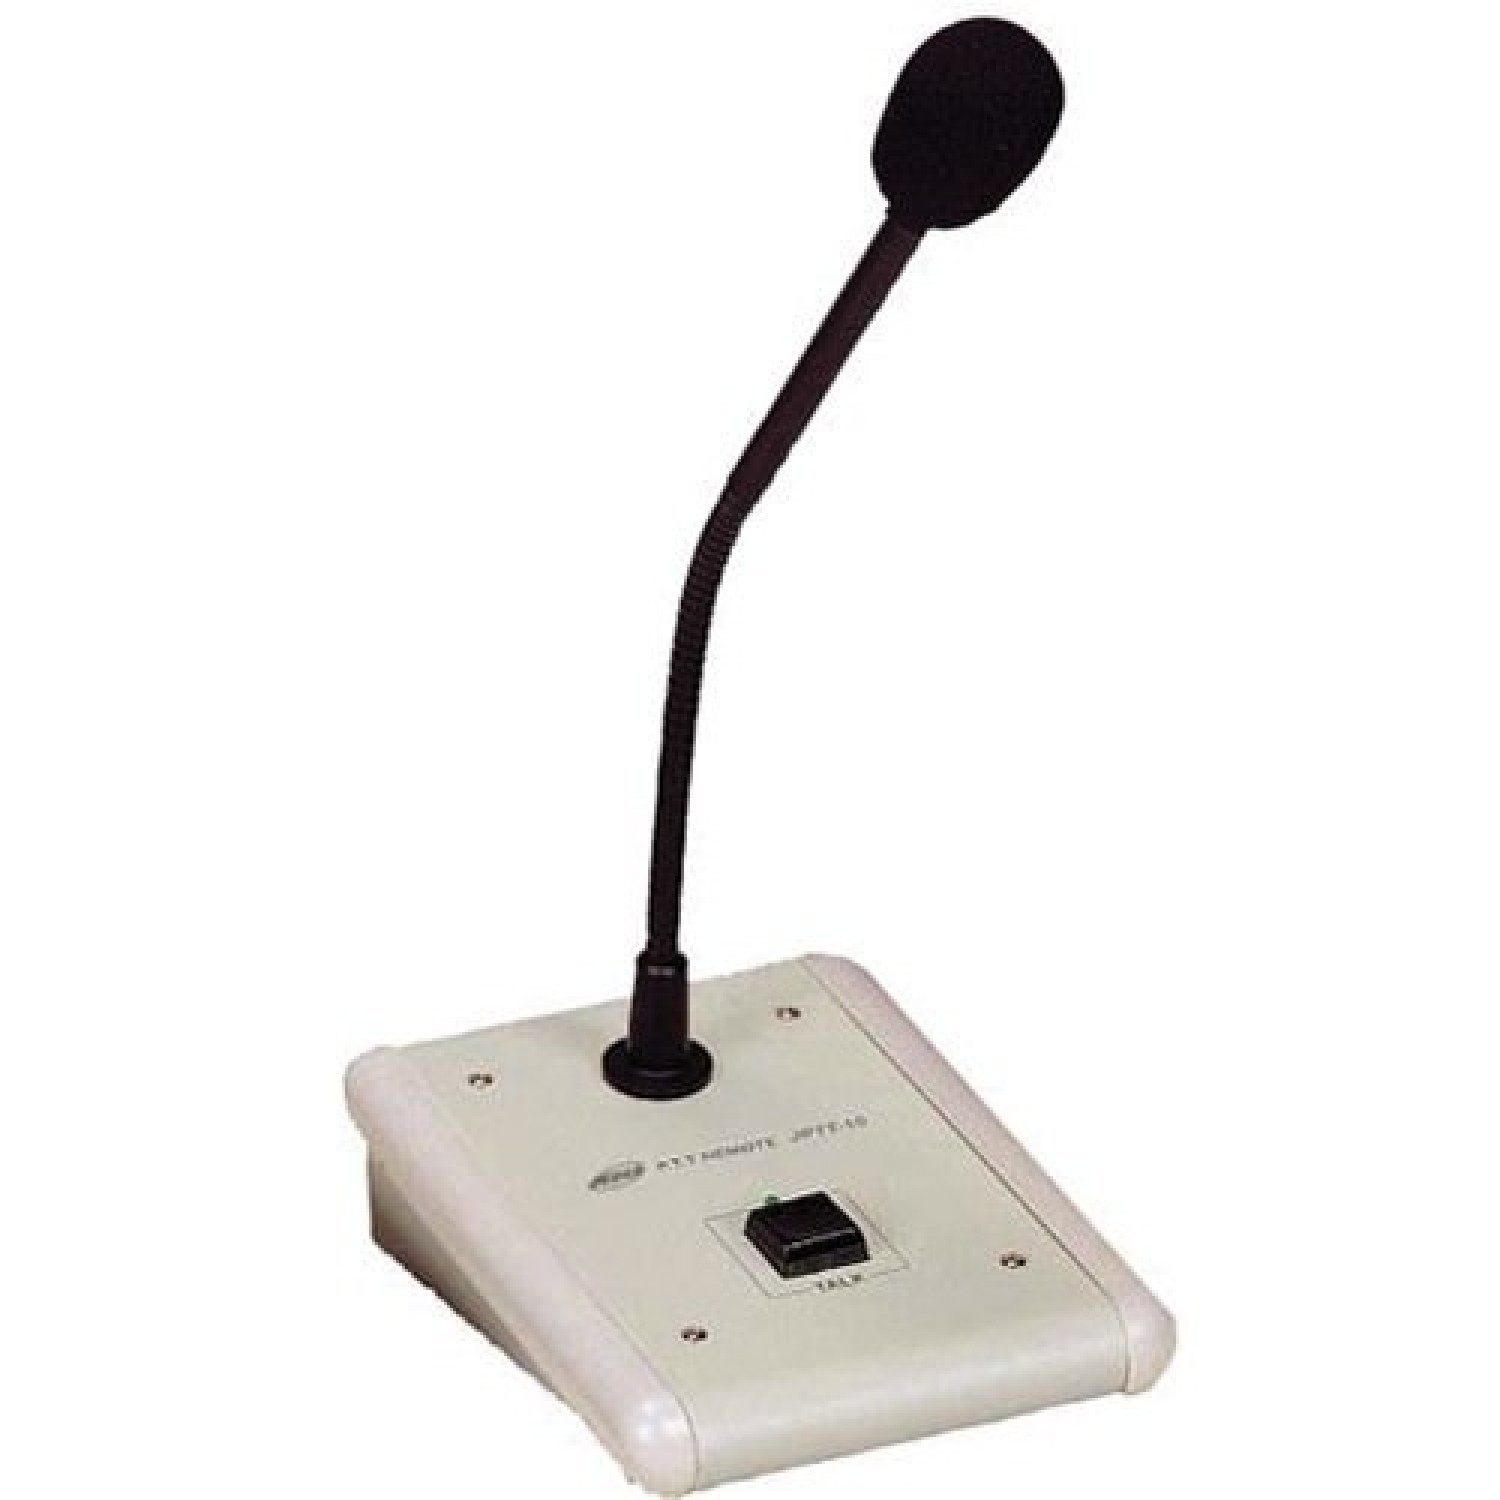 Микрофон для оповещения. JPTT-10b Jedia настольный микрофон. Микрофон Invotone gm200. Микрофон настольный ''Sonar SPS-100''. Микрофонная консоль Jedia.